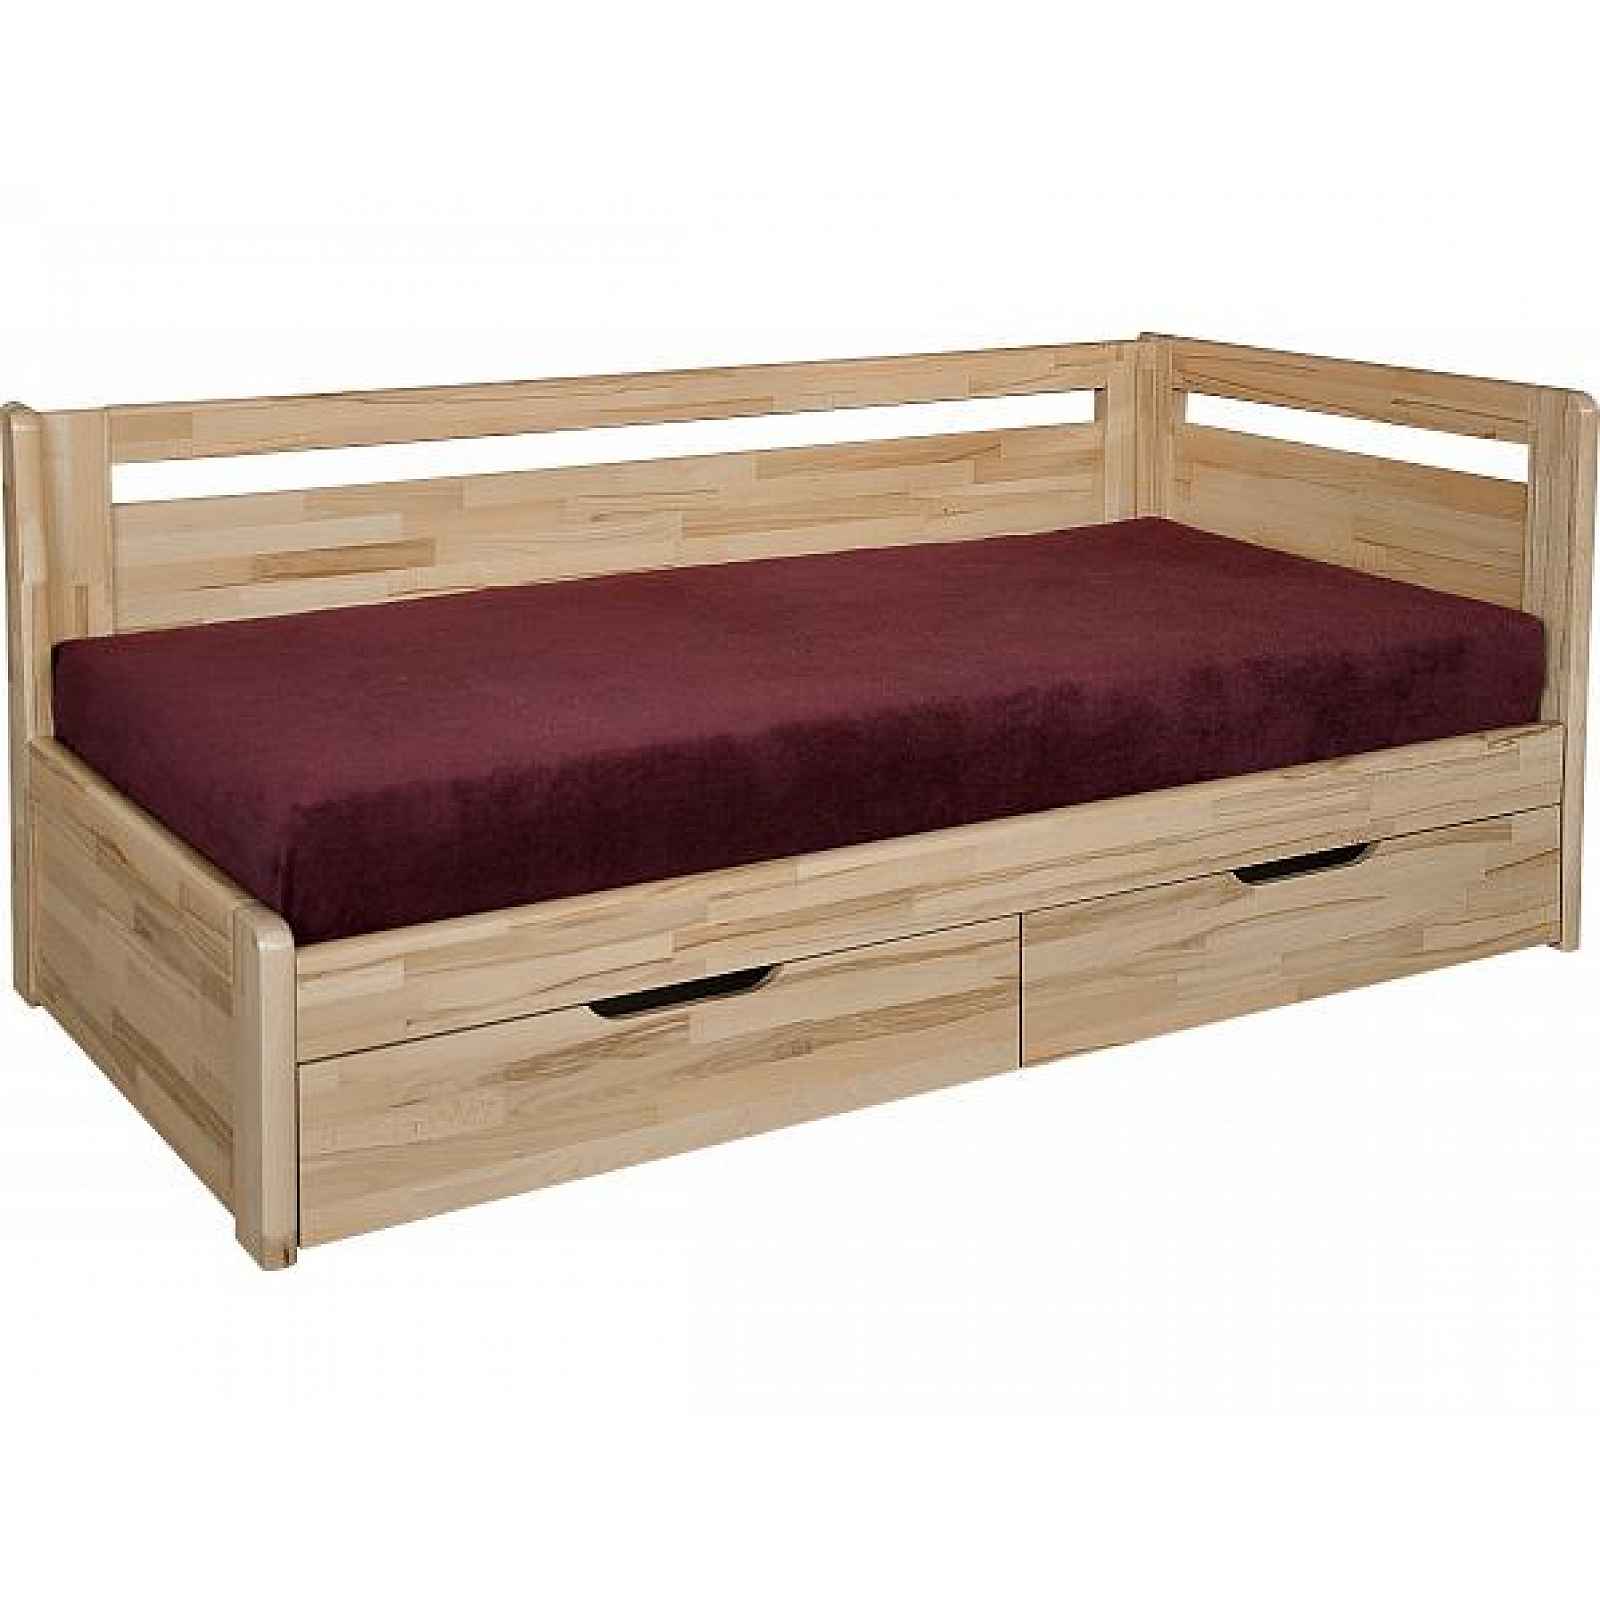 Masivní rozkládací postel Kombi, s roštem a matrací olejovosk, 90x200 cm, ořech tmavý, pouze pravé, bez opěrek, EcoStretch